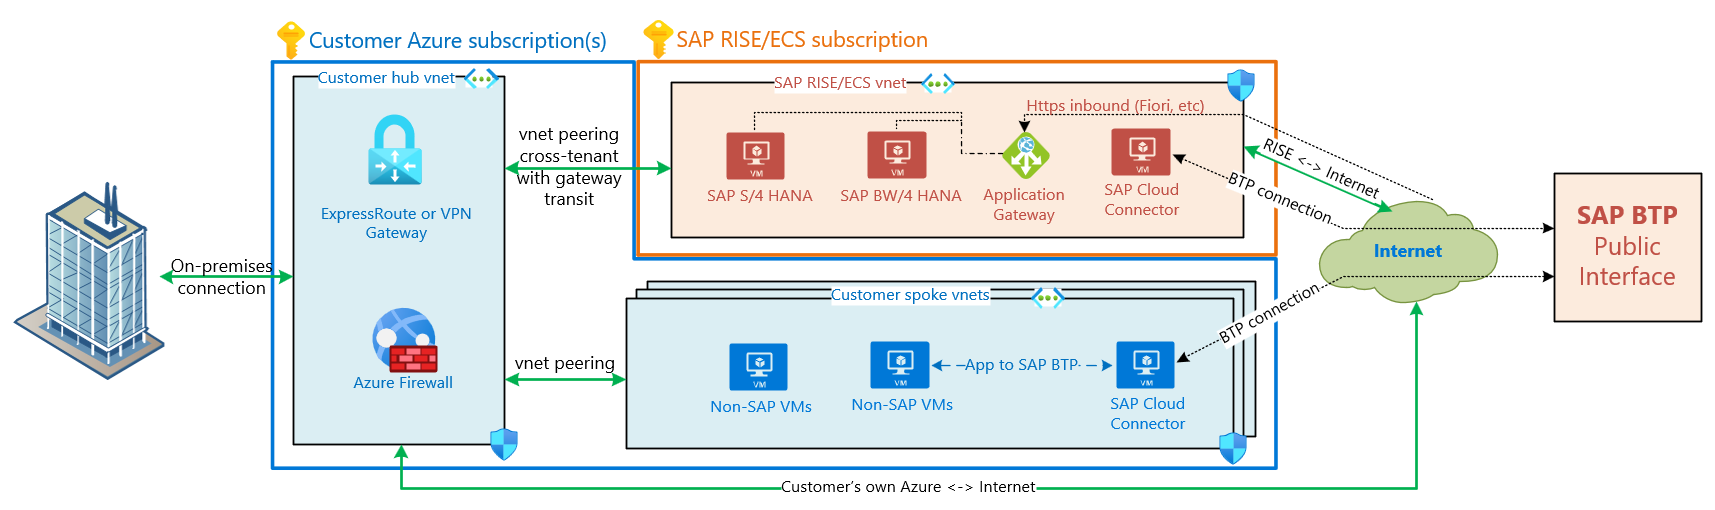 Diyagram, İNTERNET üzerinden SAP BTP'ye bağlanan SAP RISE sanal ağından SAP Cloud Connector VM'sini gösterir. SAP RISE/ECS gelen/giden İnternet bağlantısı sağlar. Müşterinin kendi iş yükleri, SAP RISE sanal asına geçmeden kendi İnternet tartışmalarından geçer